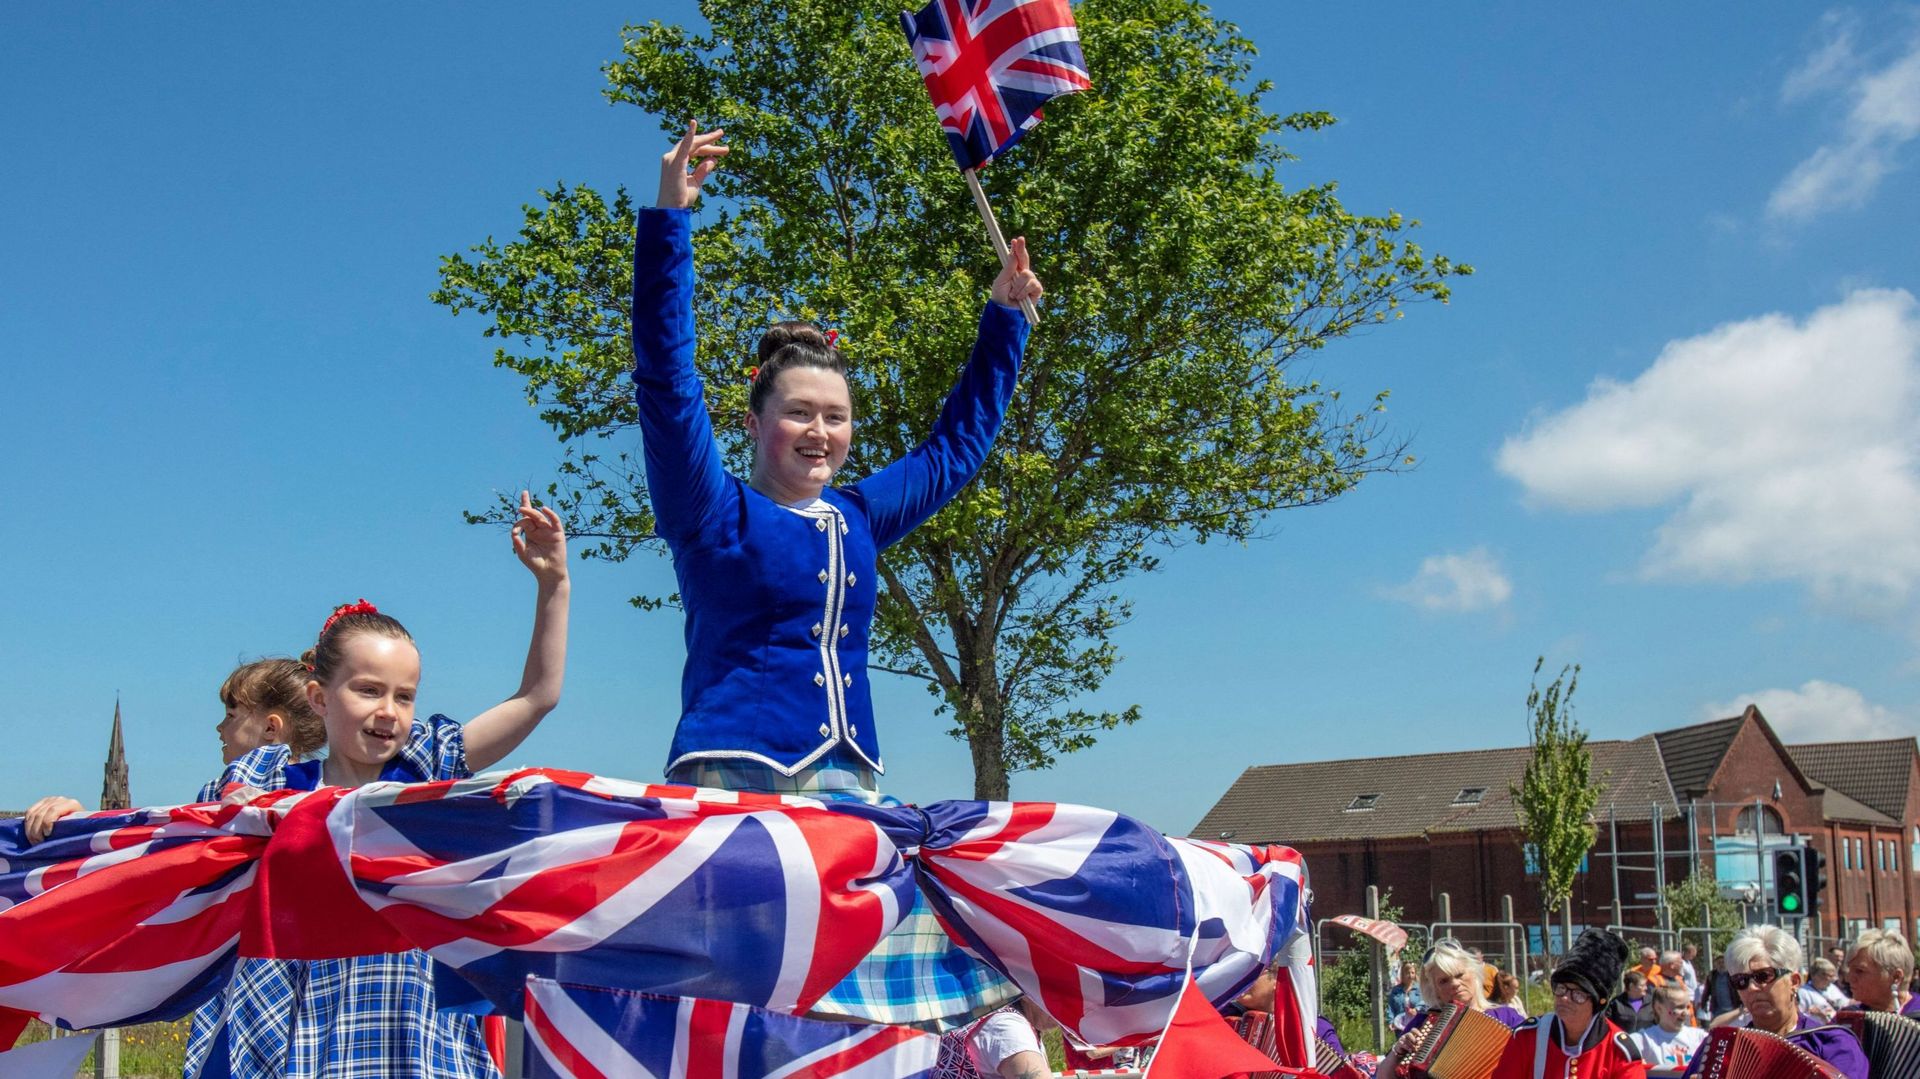 Image d'illustration - Une jeune femme tient un drapeau national britannique alors qu'elle participe à un défilé lors d'une fête de rue à Shankill, à Belfast en Irlande du Nord, le 4 juin 2022.